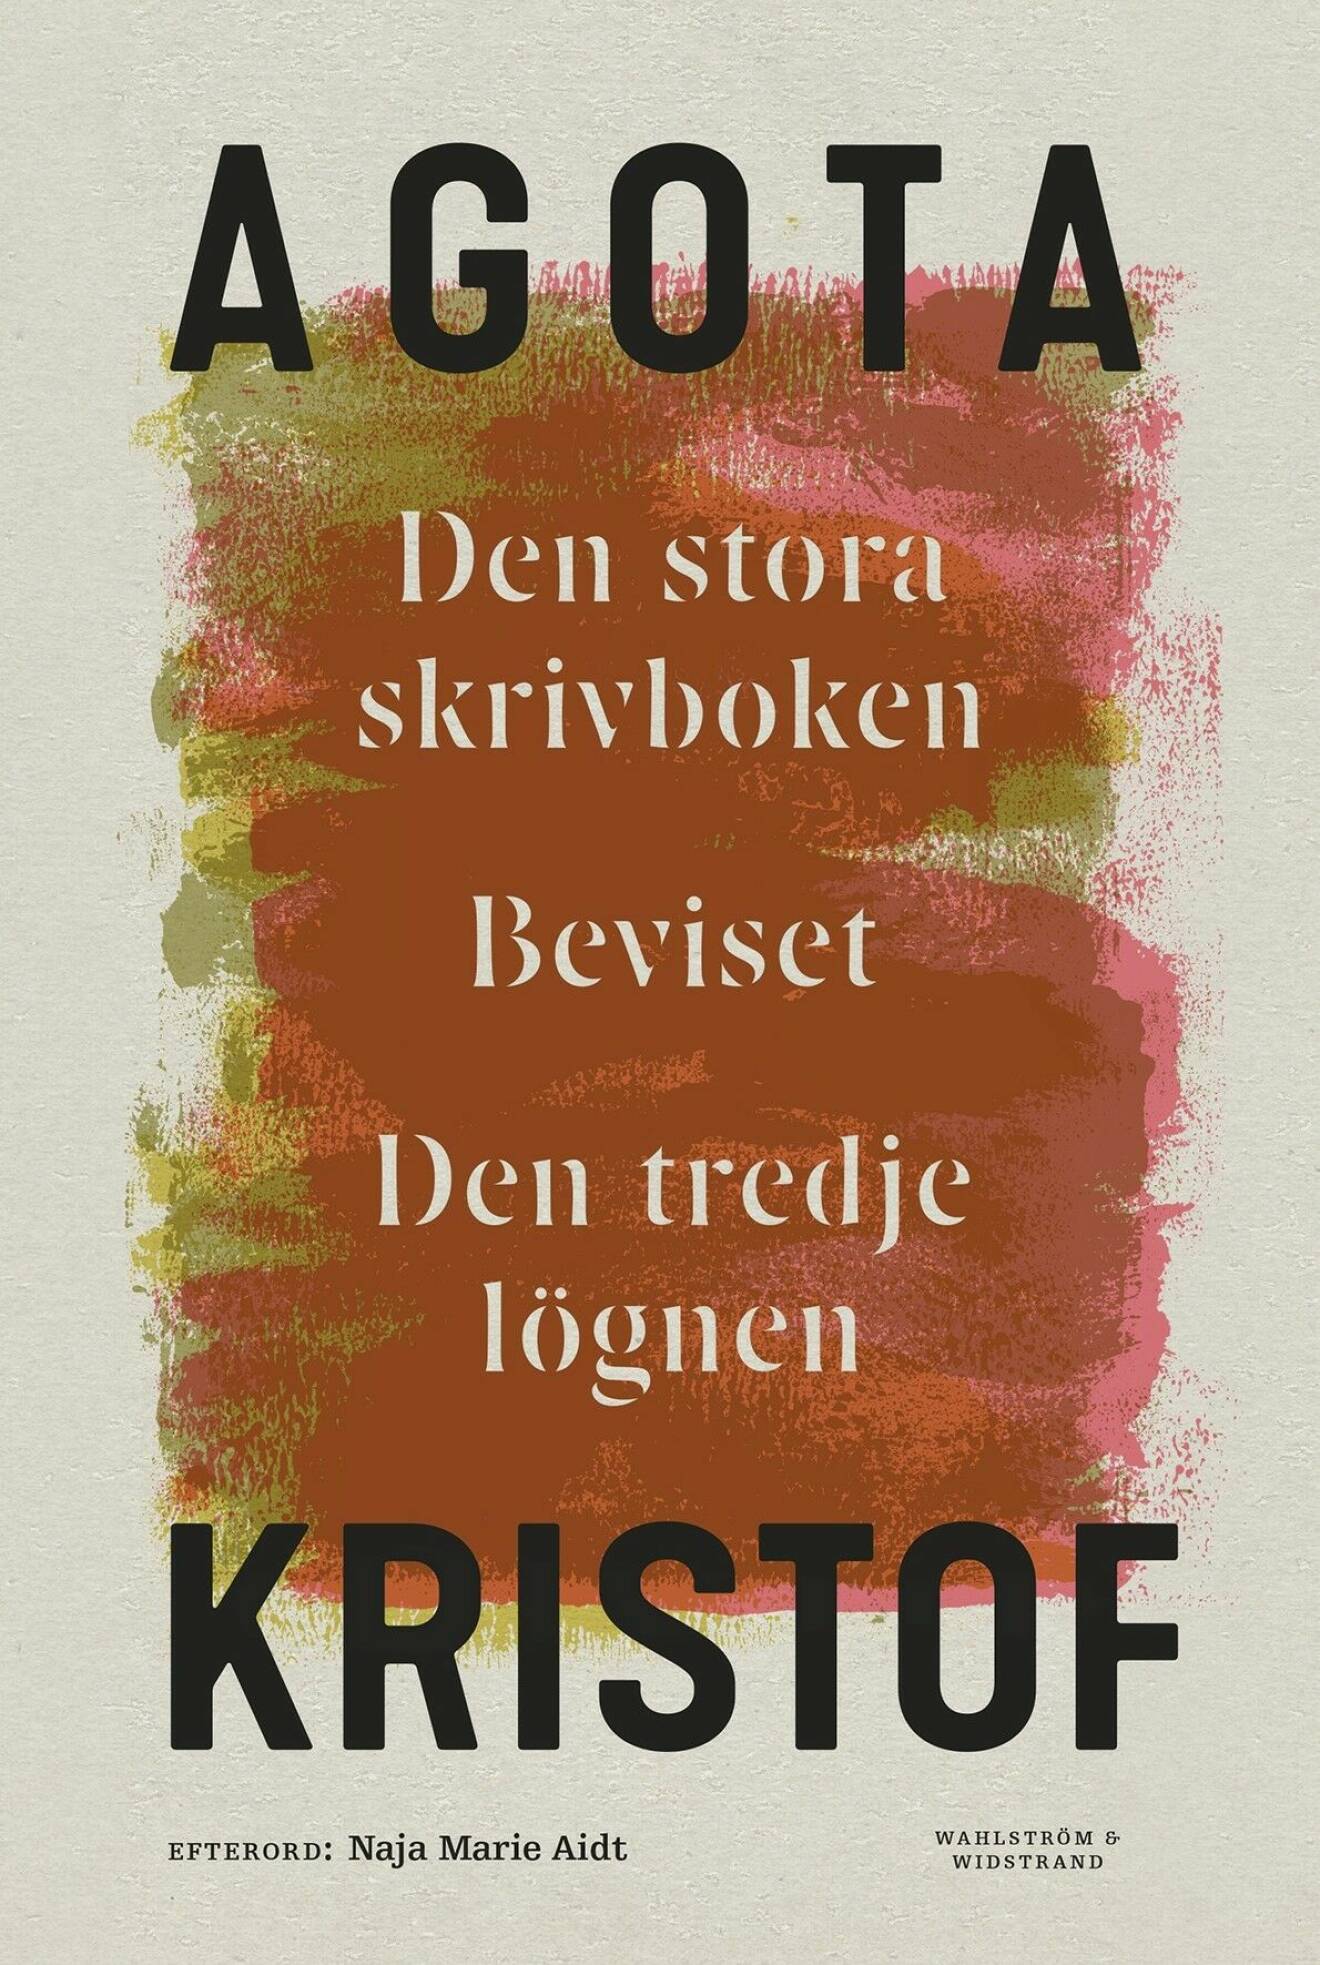 Den stora skrivboken/Beviset/Den tredje lögnen av Agota Kristof.